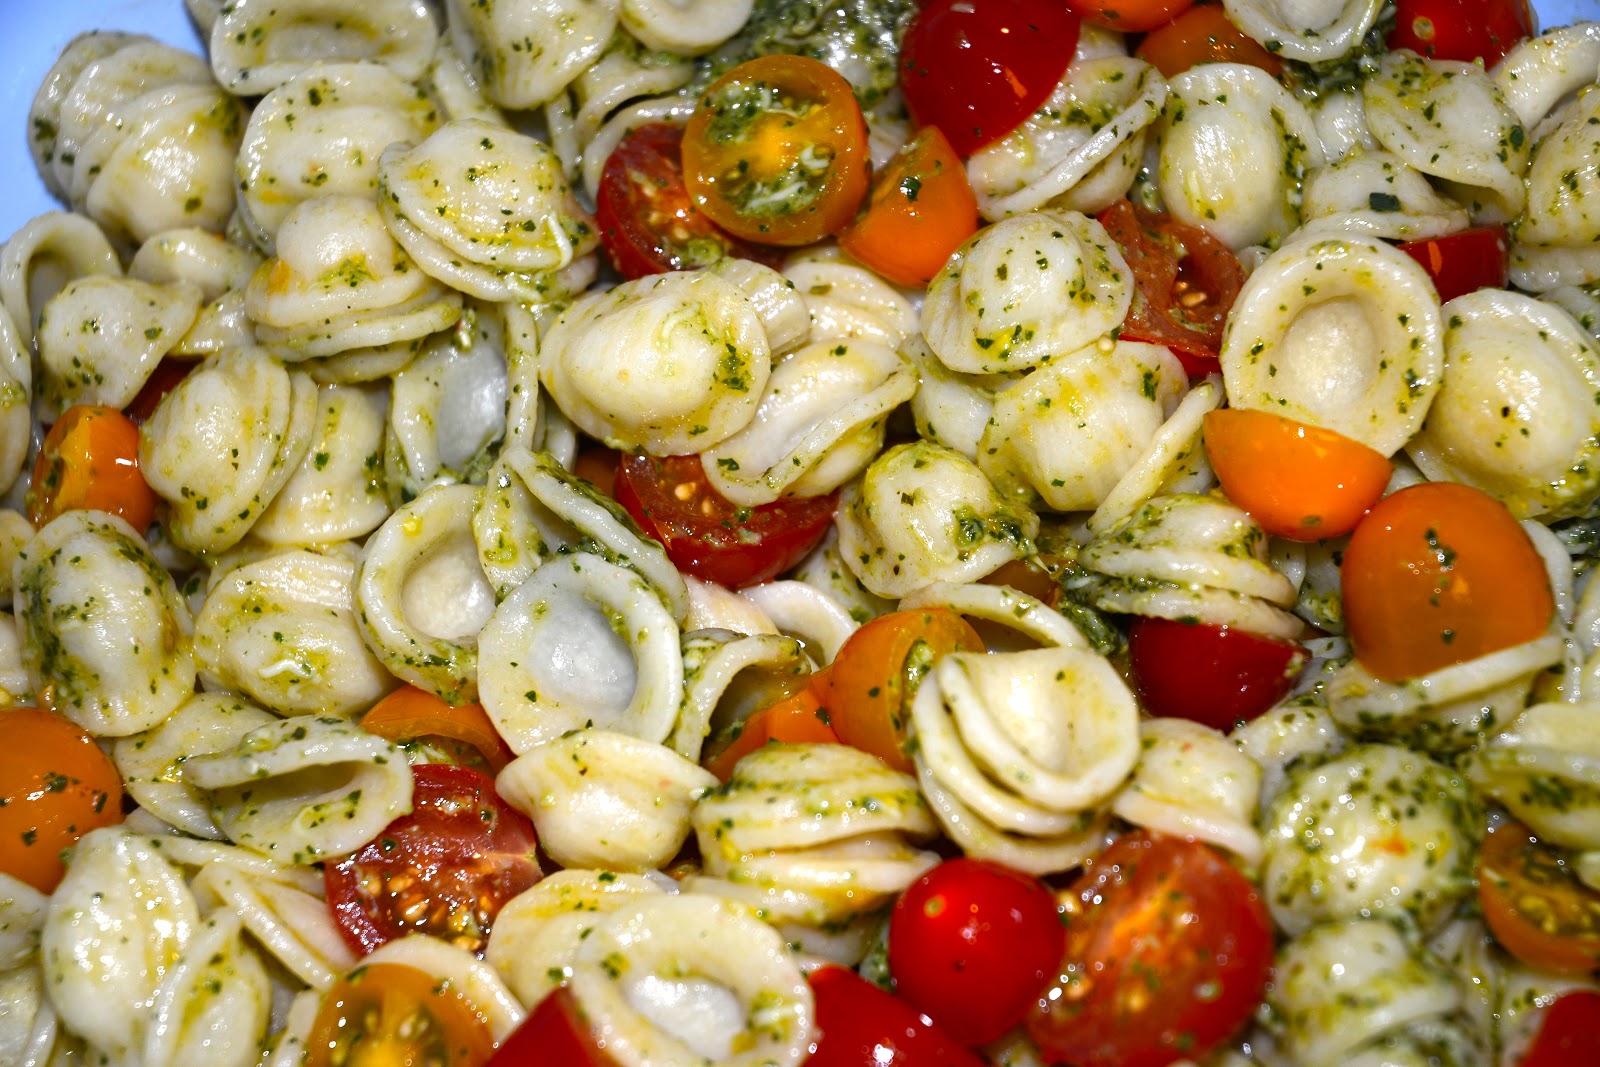 Bruschetta Alla Romana: Summer Pesto Salad